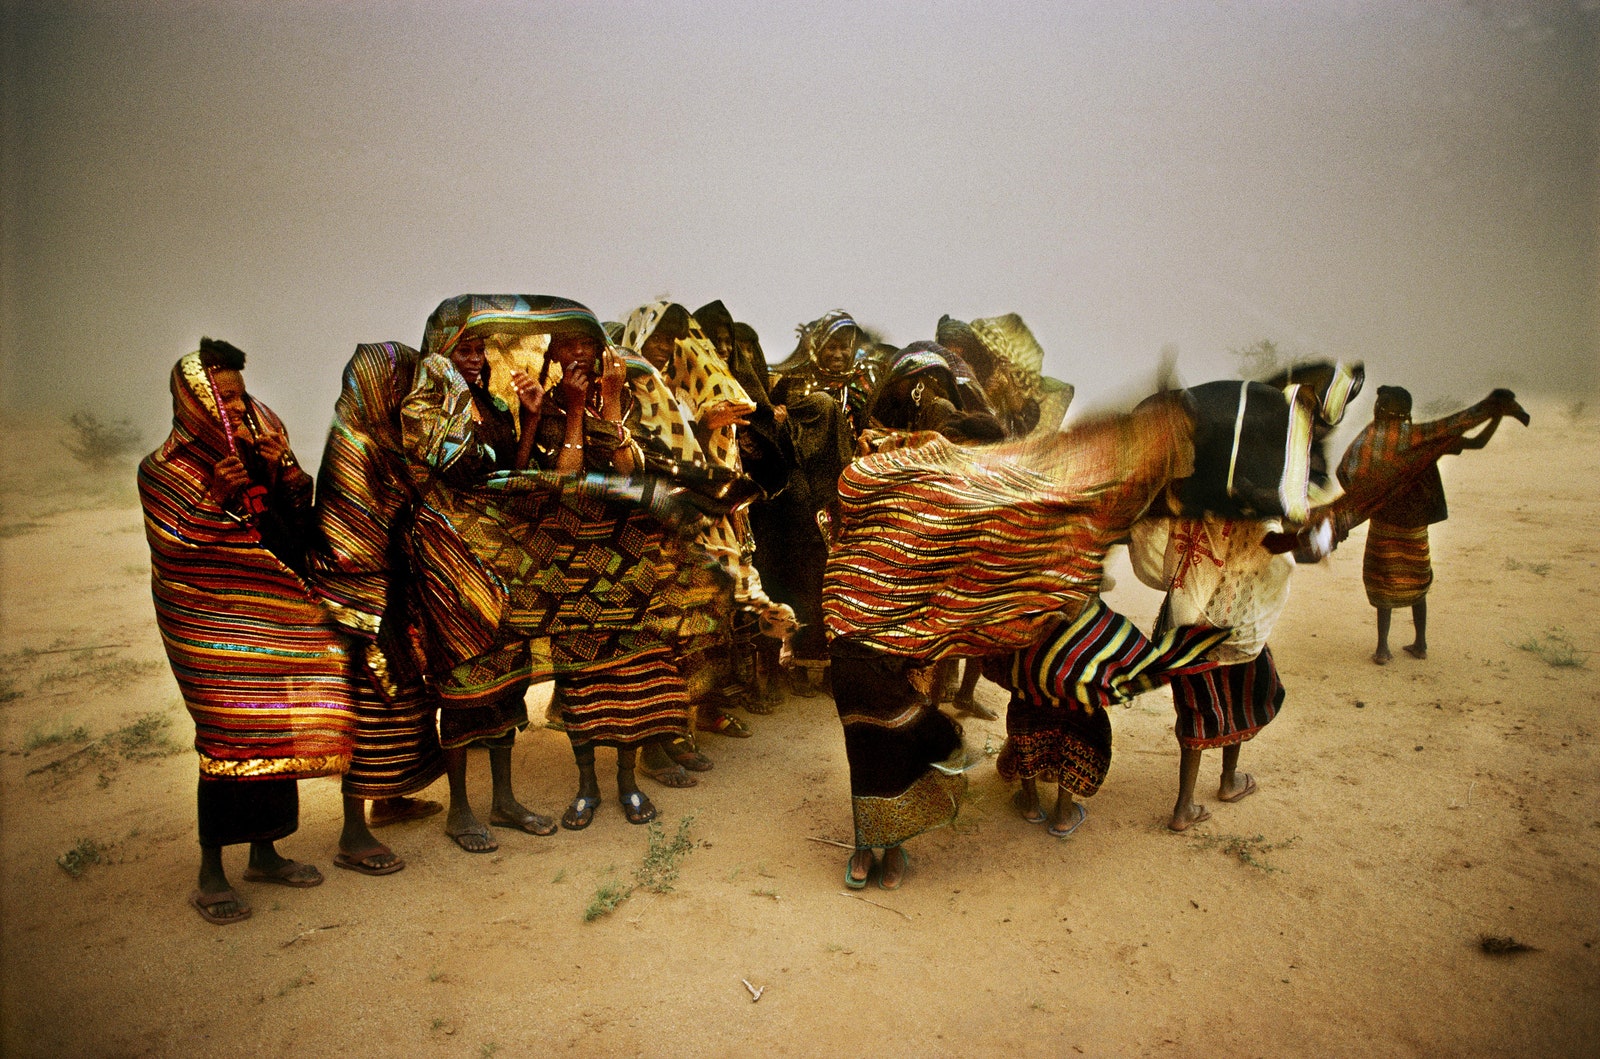 Паскаль Мэтр. Нигер 1996. Женщины племени водаабе во время песчаной бури в долине Азвак. © Pascal MaitreMyopPanos